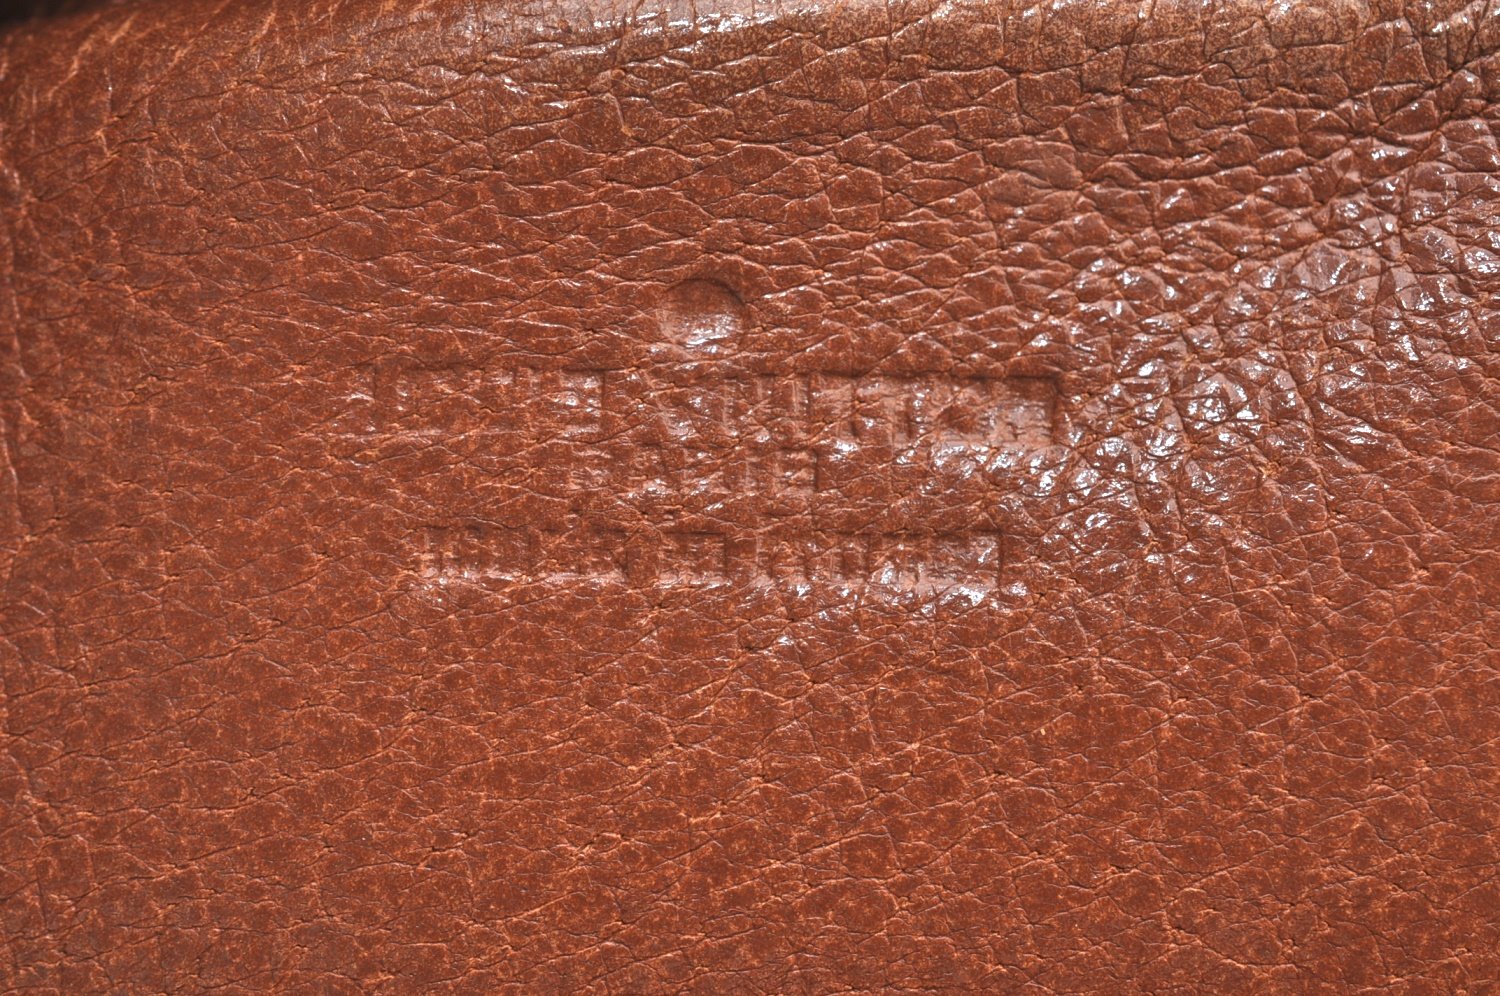 Authentic Louis Vuitton Monogram Pochette Sport Clutch Hand Bag Old Model K8200